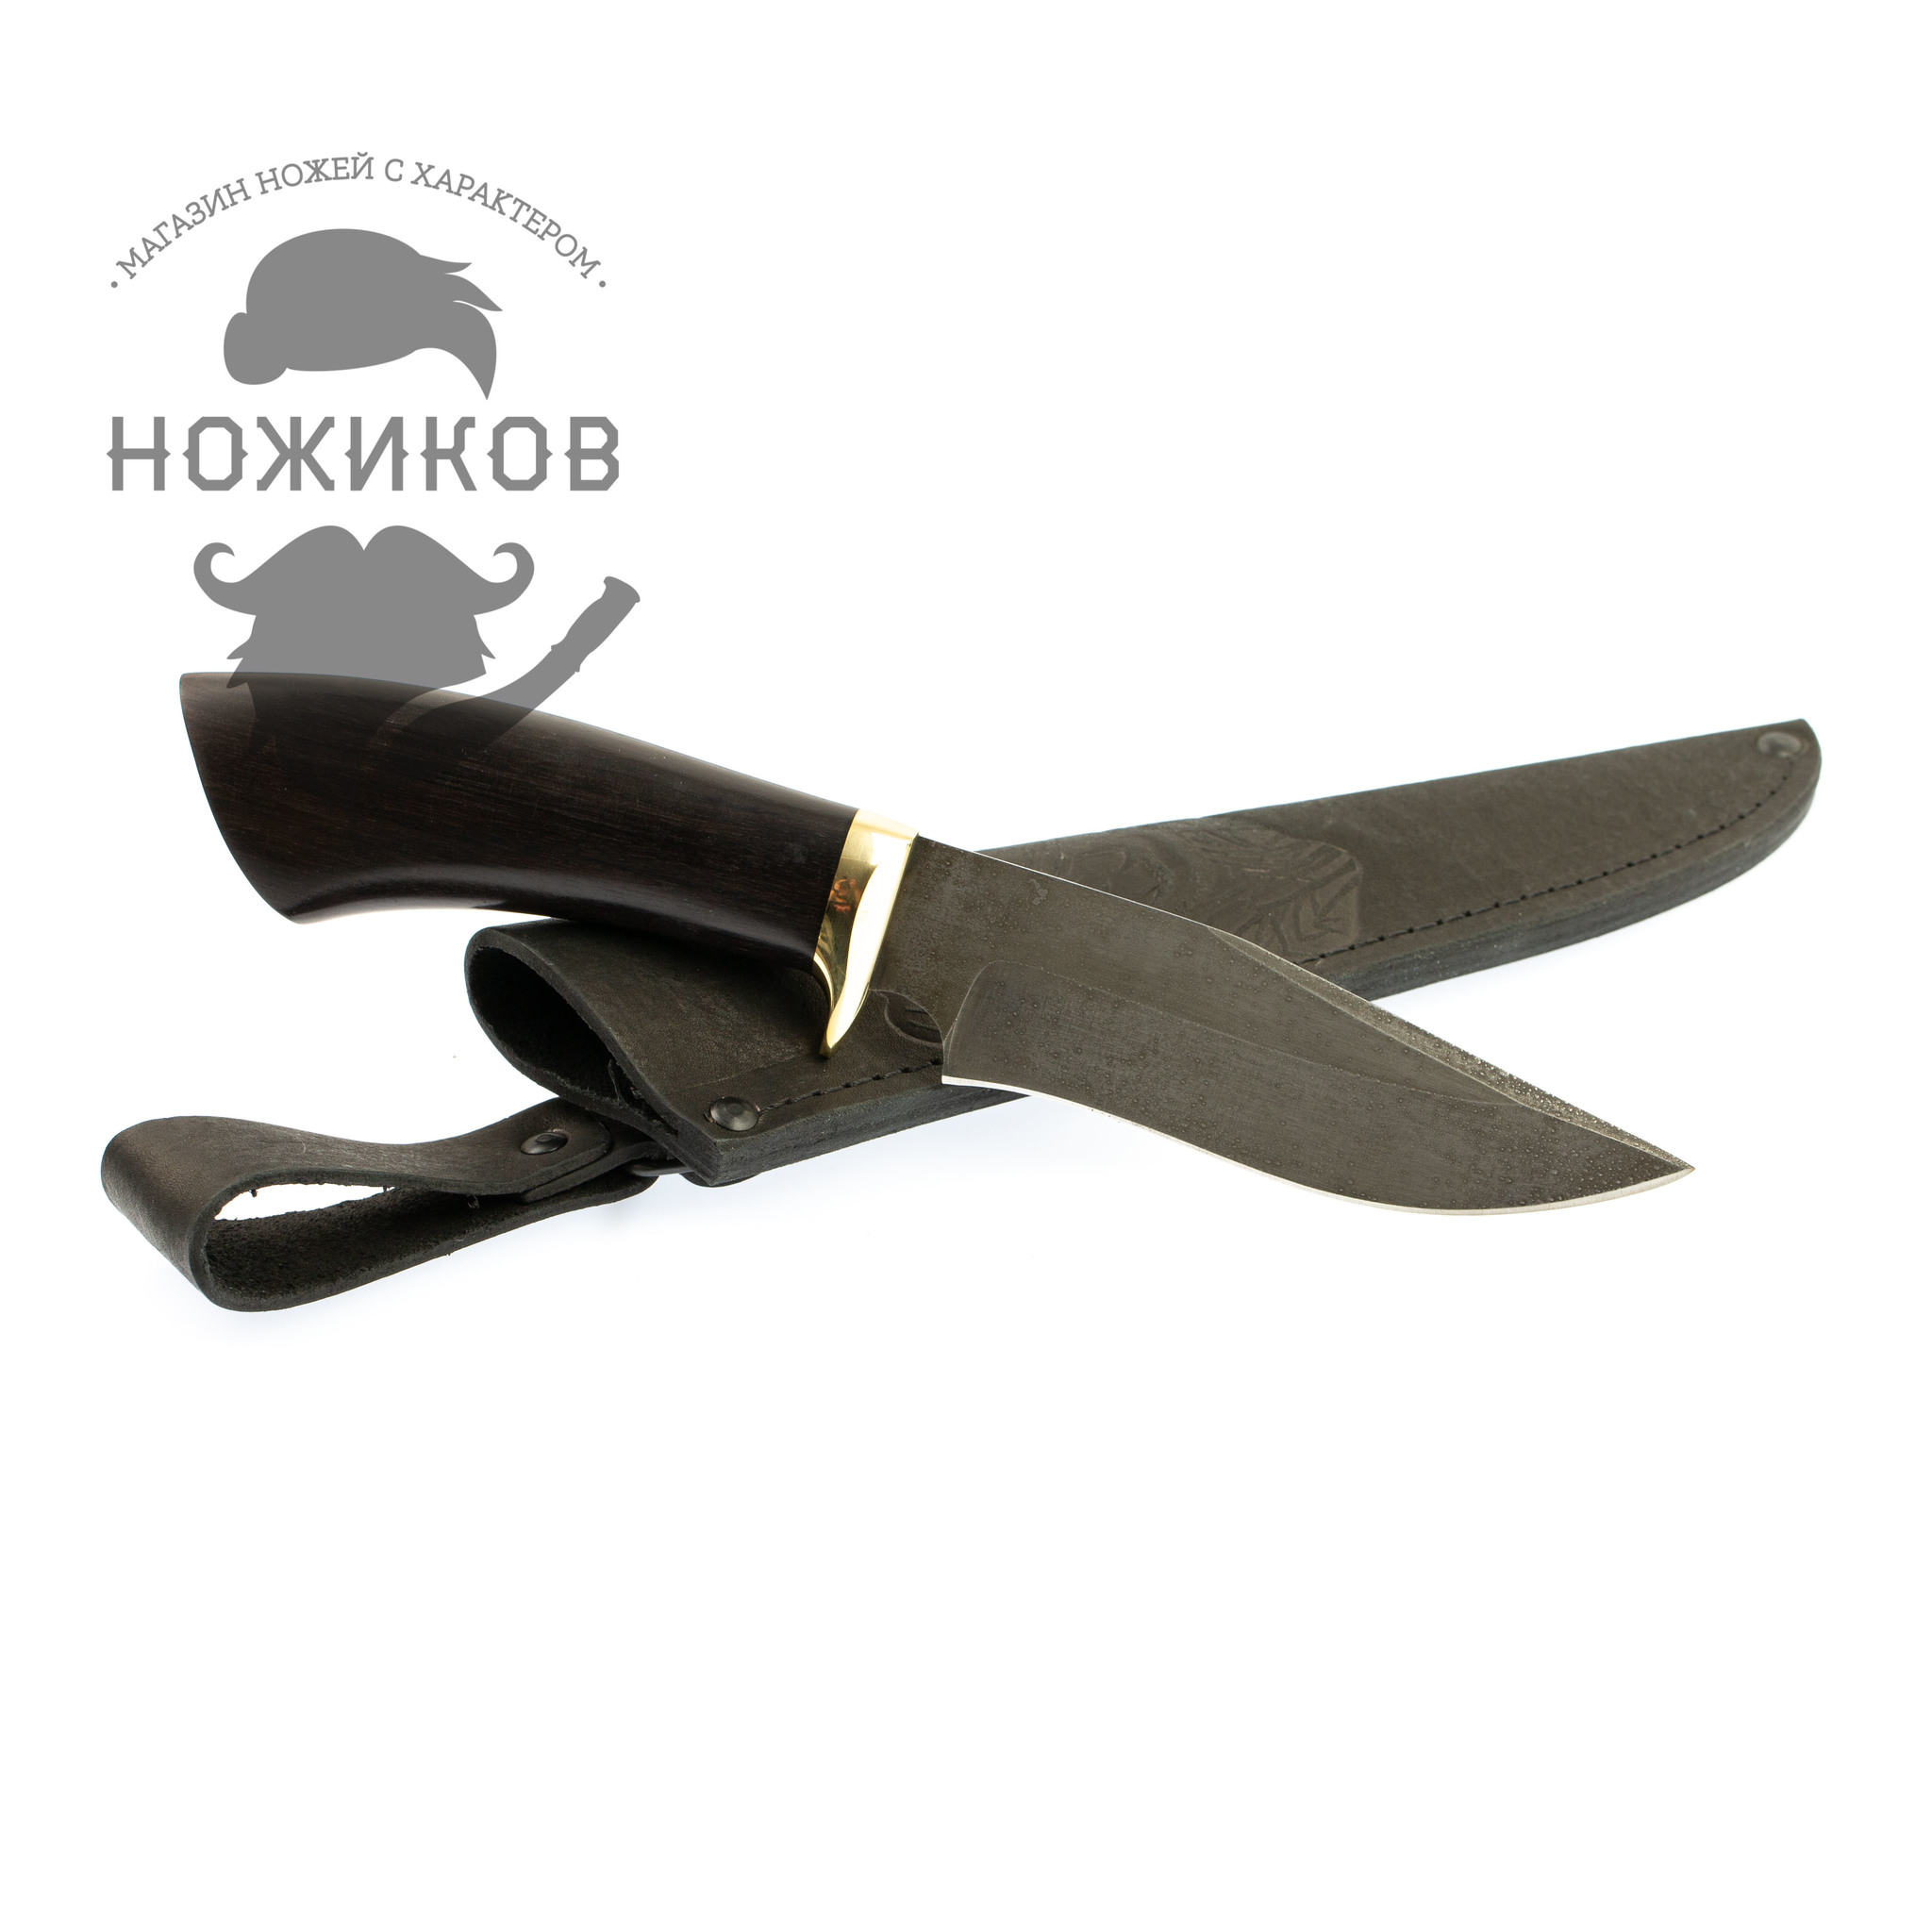 Нож Универсальный-2, сталь ХВ5, граб от Ножиков